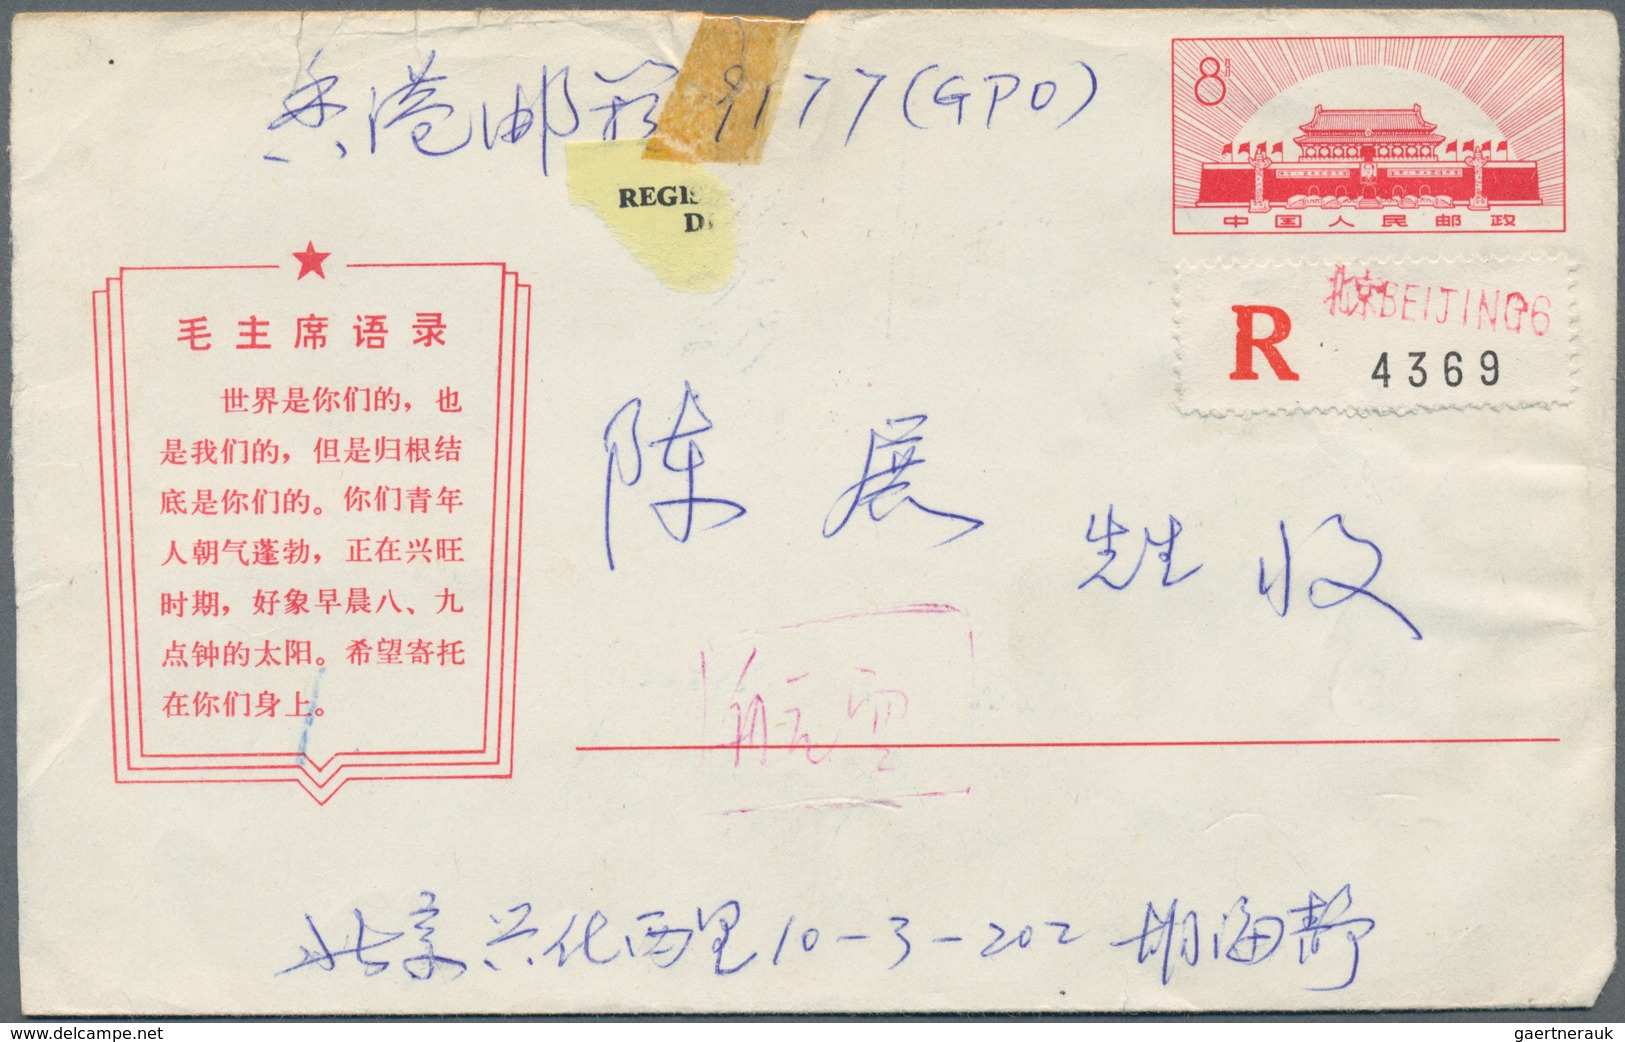 China - Volksrepublik - Ganzsachen: 1967, Cultural Revolution Stationery Envelopes With Slogans, A C - Postcards